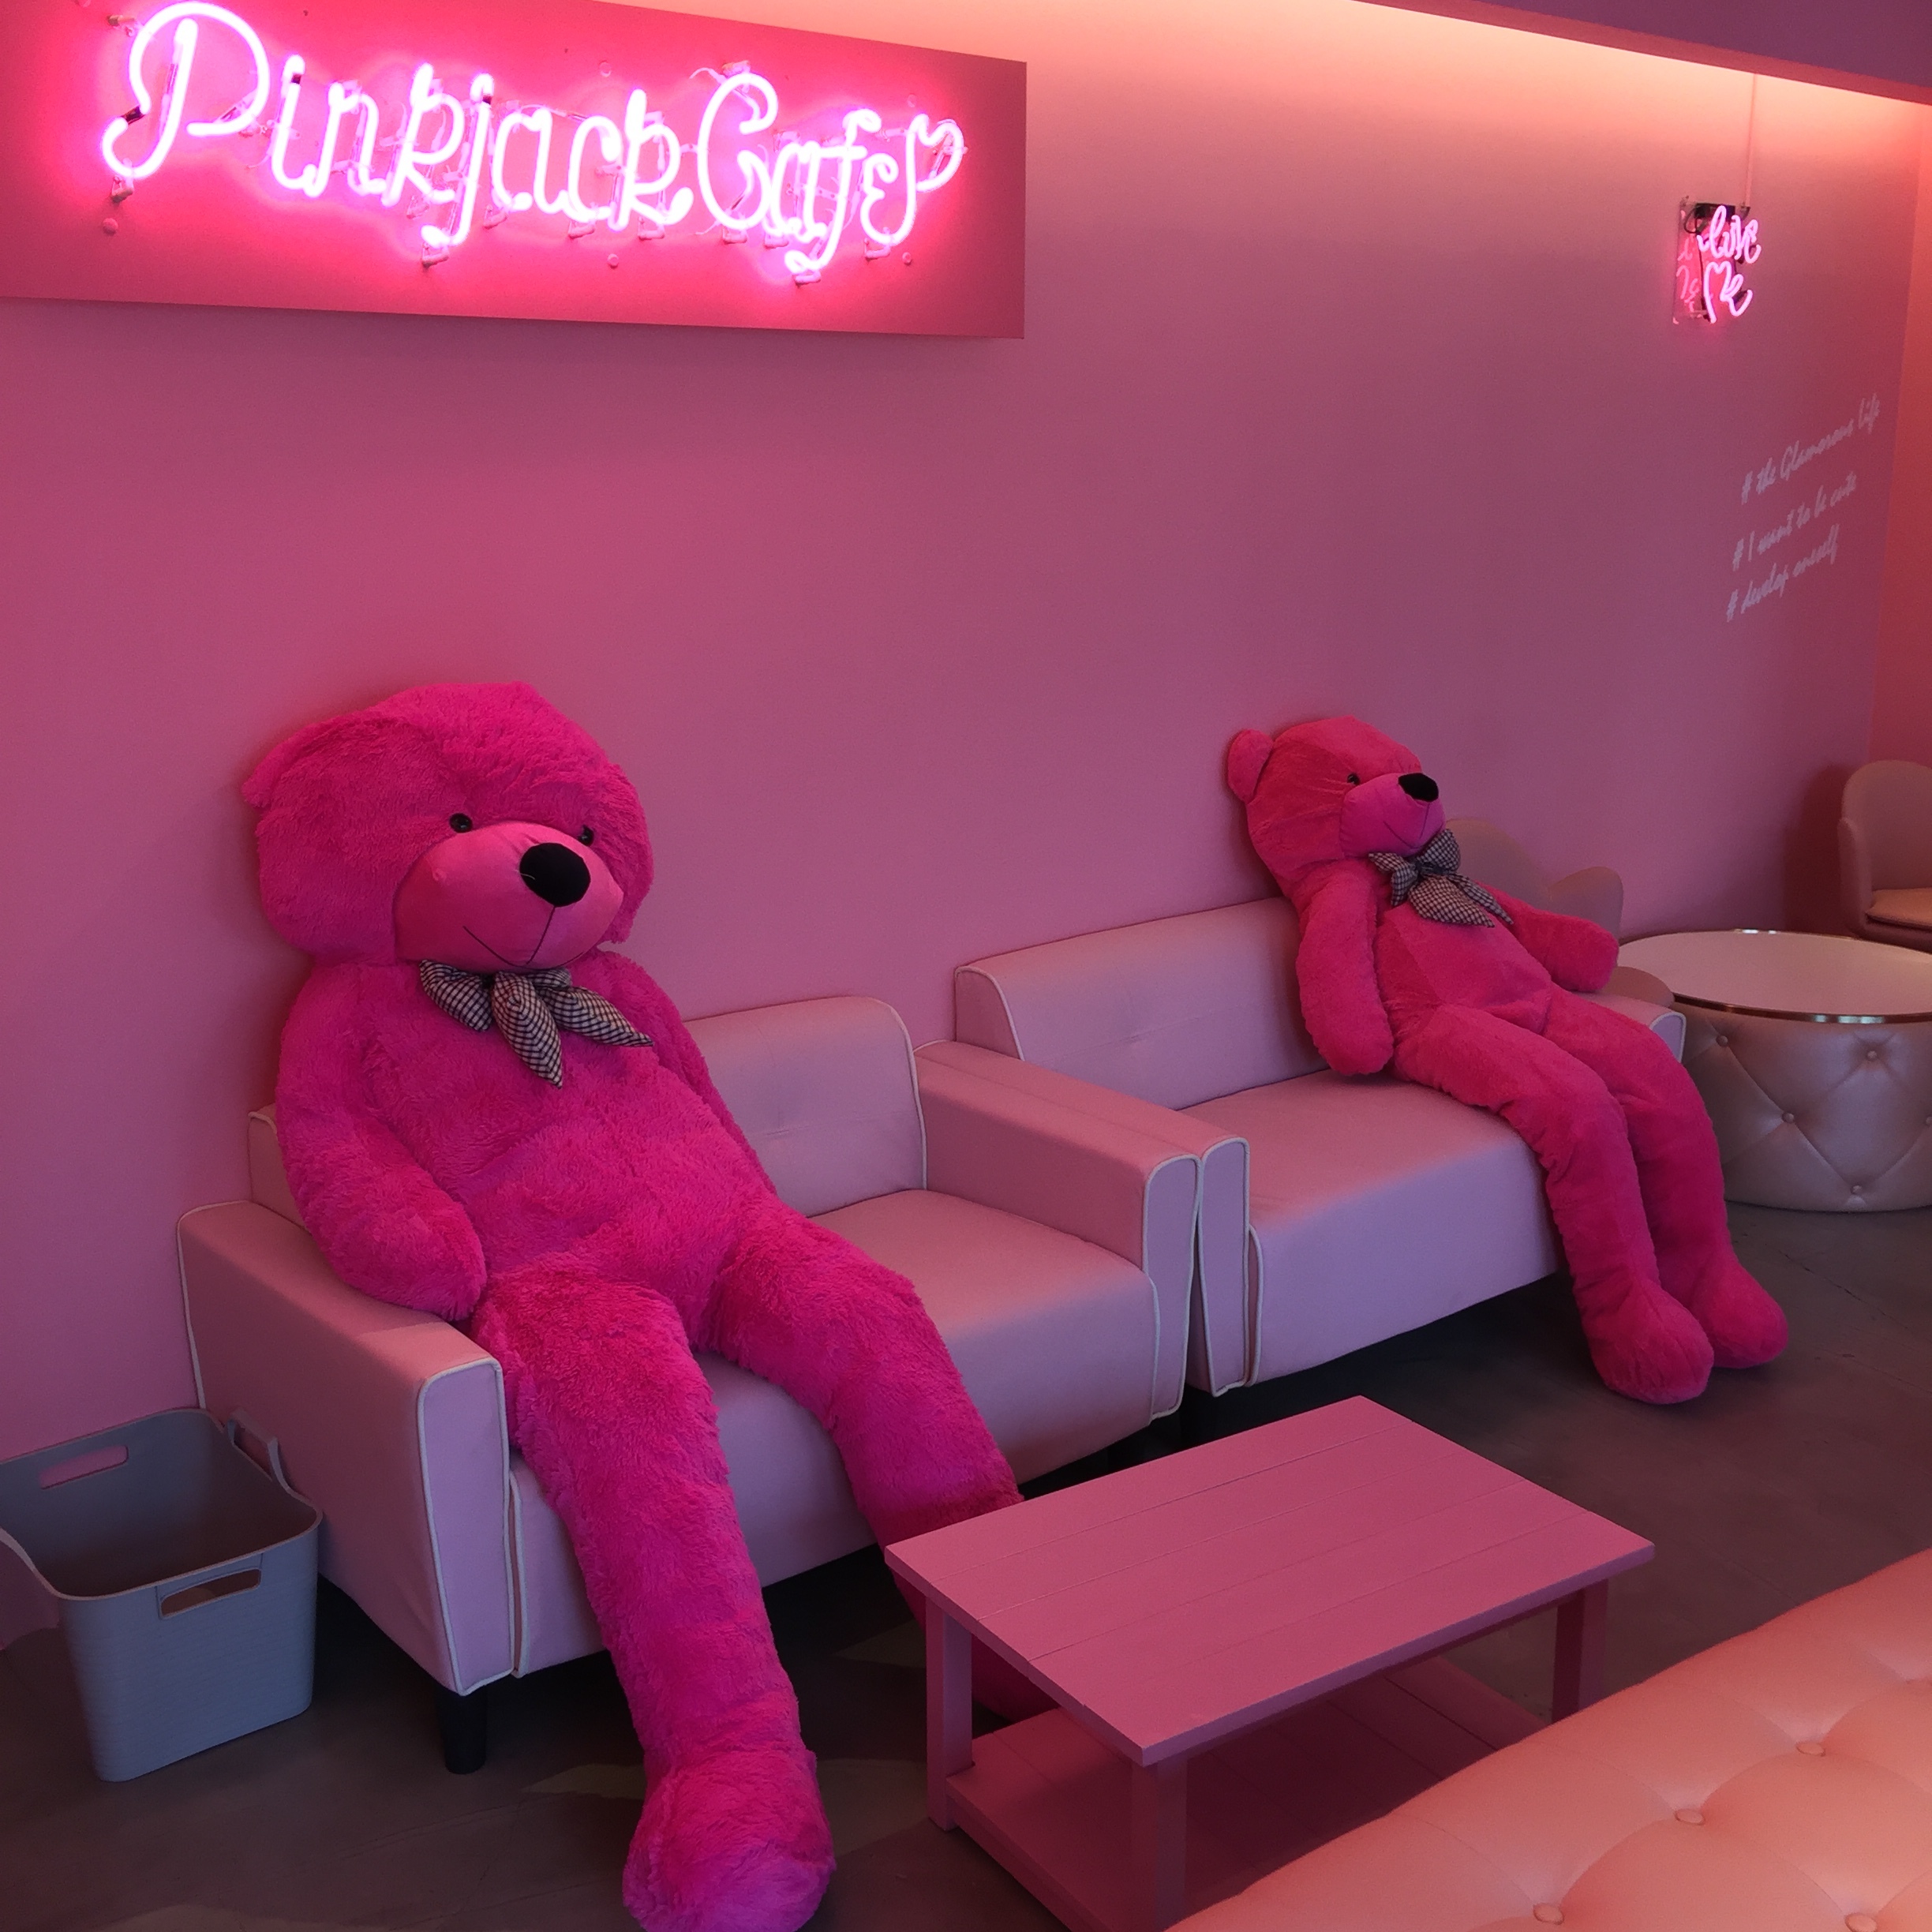 静岡の Pinkjackcafe ピンクジャックカフェ が夏に向けてメニューをリニューアル 新インスタ映えスポット がアジアに Kawaii を発信 Pinkjackcafeのプレスリリース